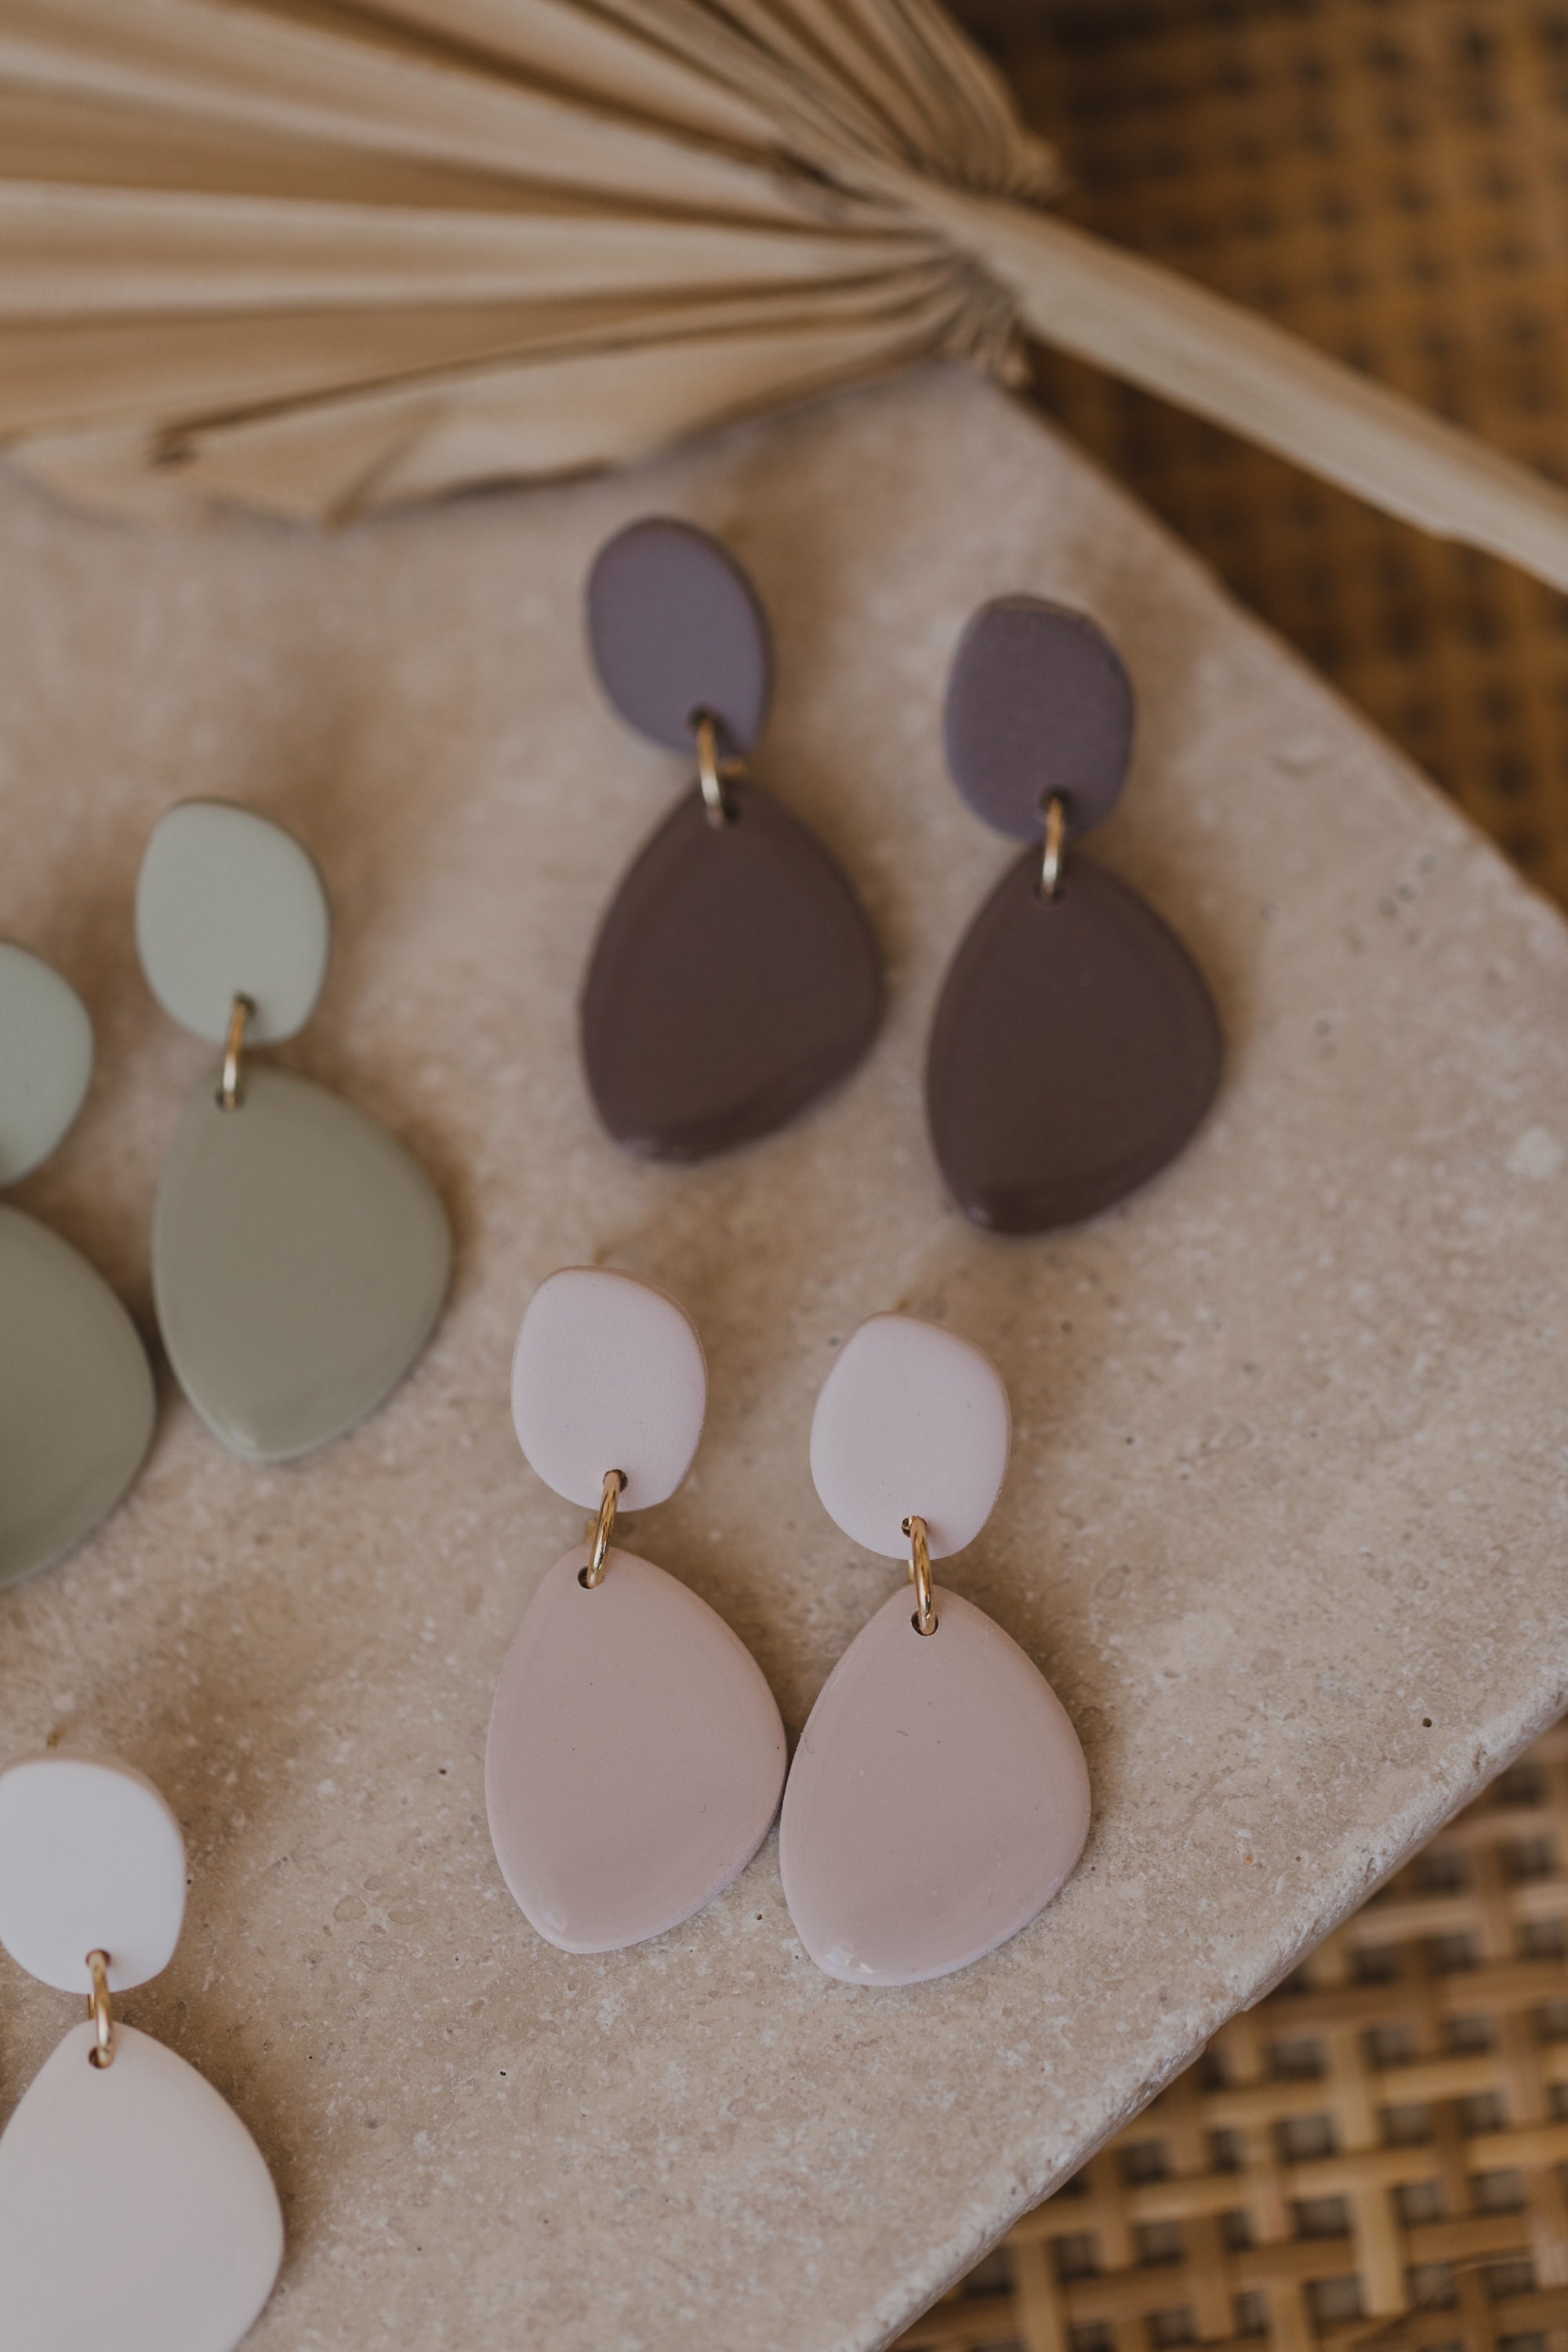 Ovale matt-glänzende Ohrringe in zarten Pastell-Tönen